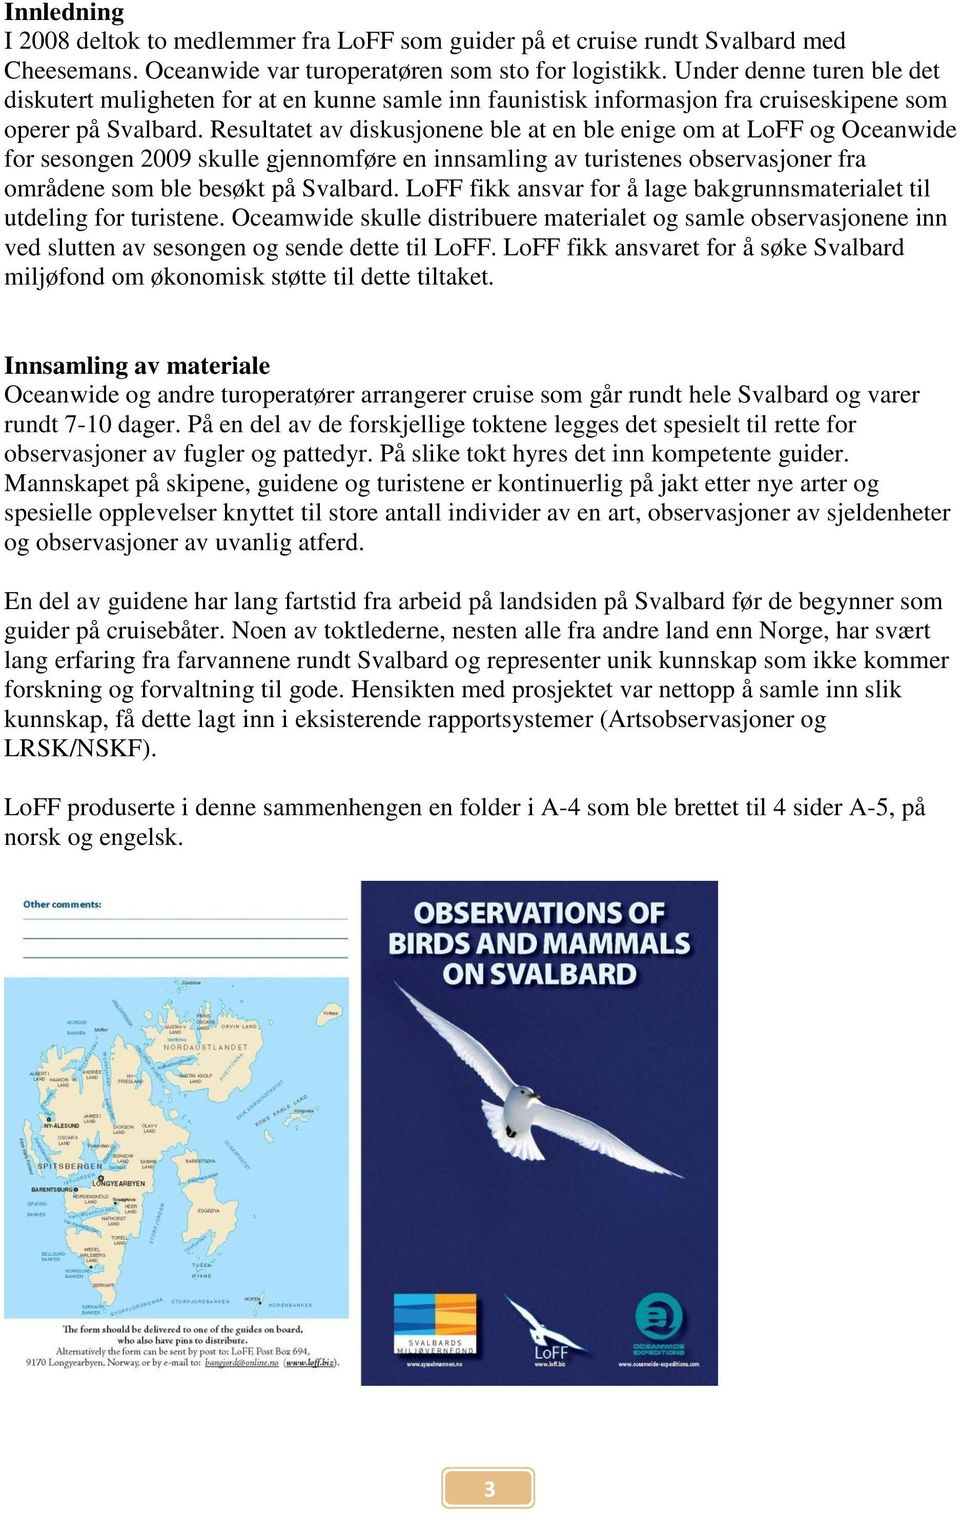 Resultatet av diskusjonene ble at en ble enige om at LoFF og Oceanwide for sesongen 2009 skulle gjennomføre en innsamling av turistenes observasjoner fra områdene som ble besøkt på Svalbard.